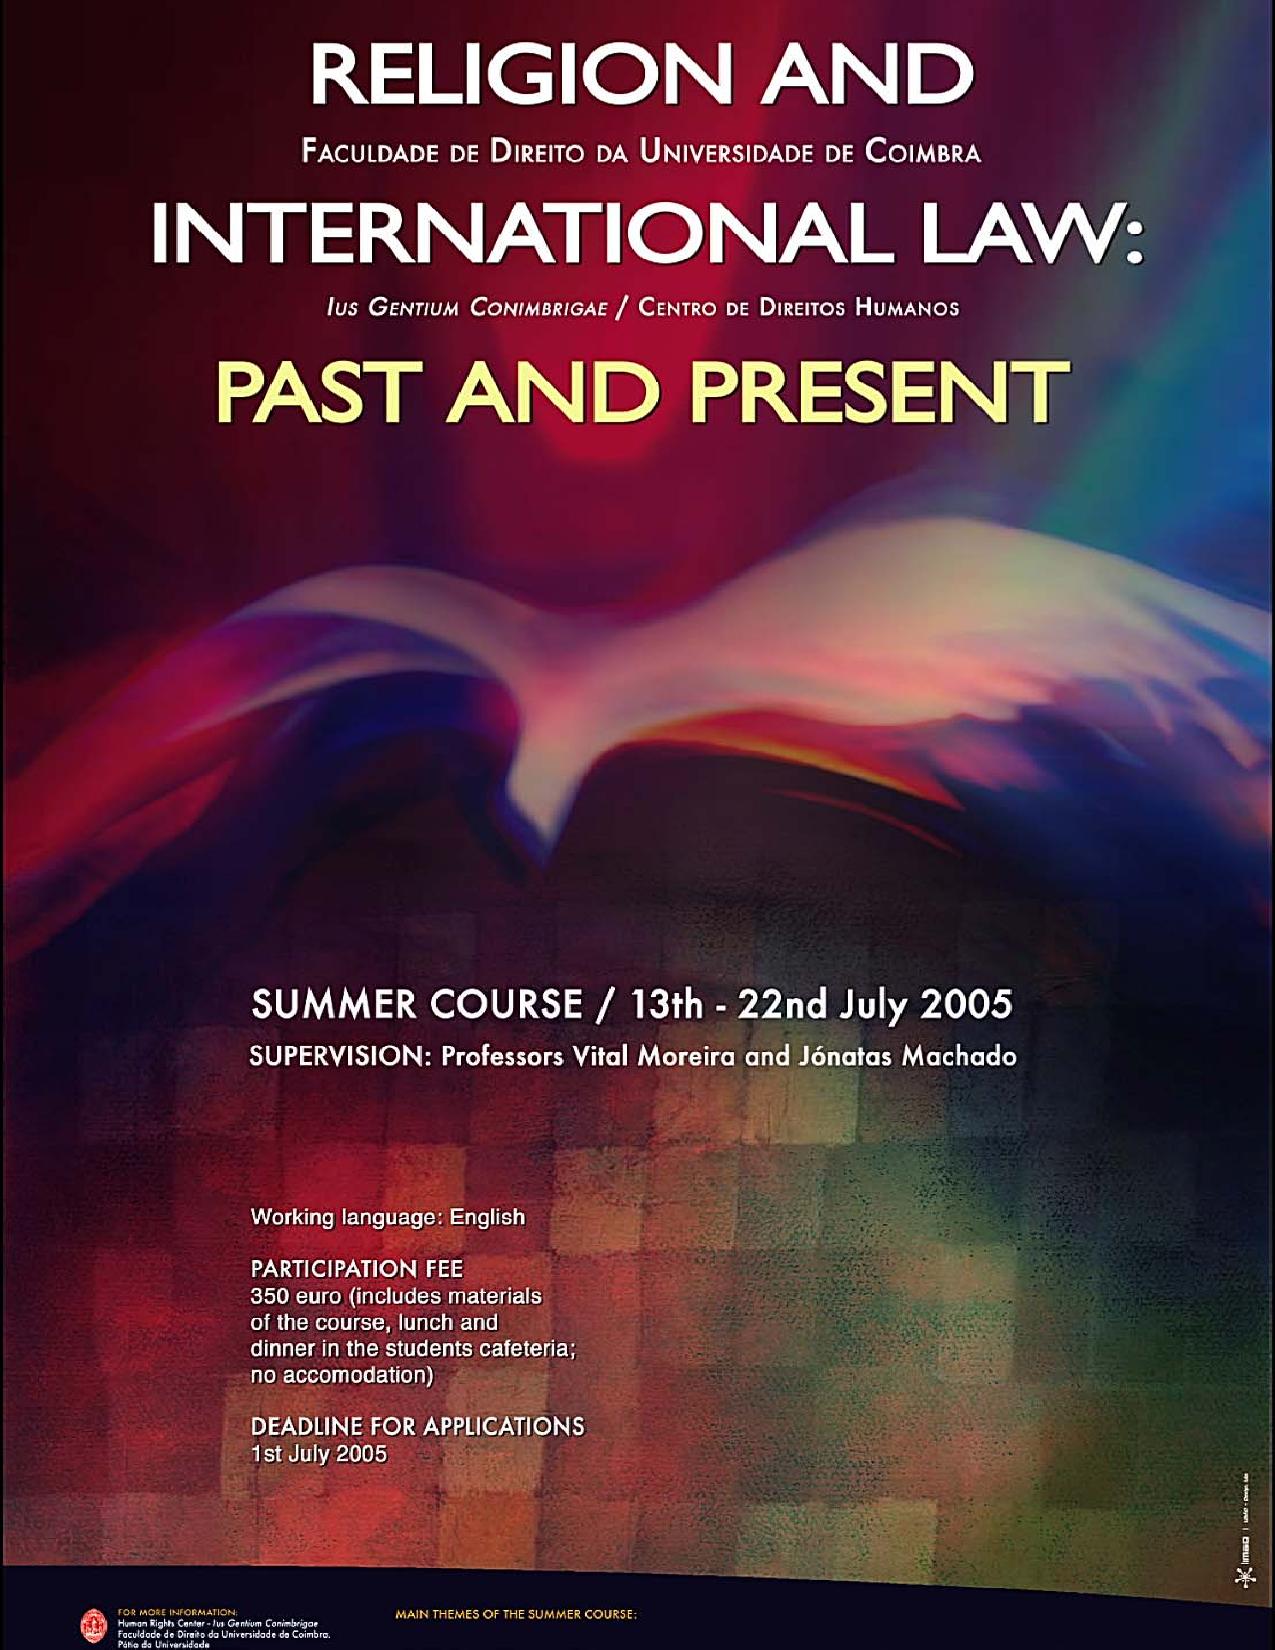  Curso de Verão Religion and International Law: Past and Present